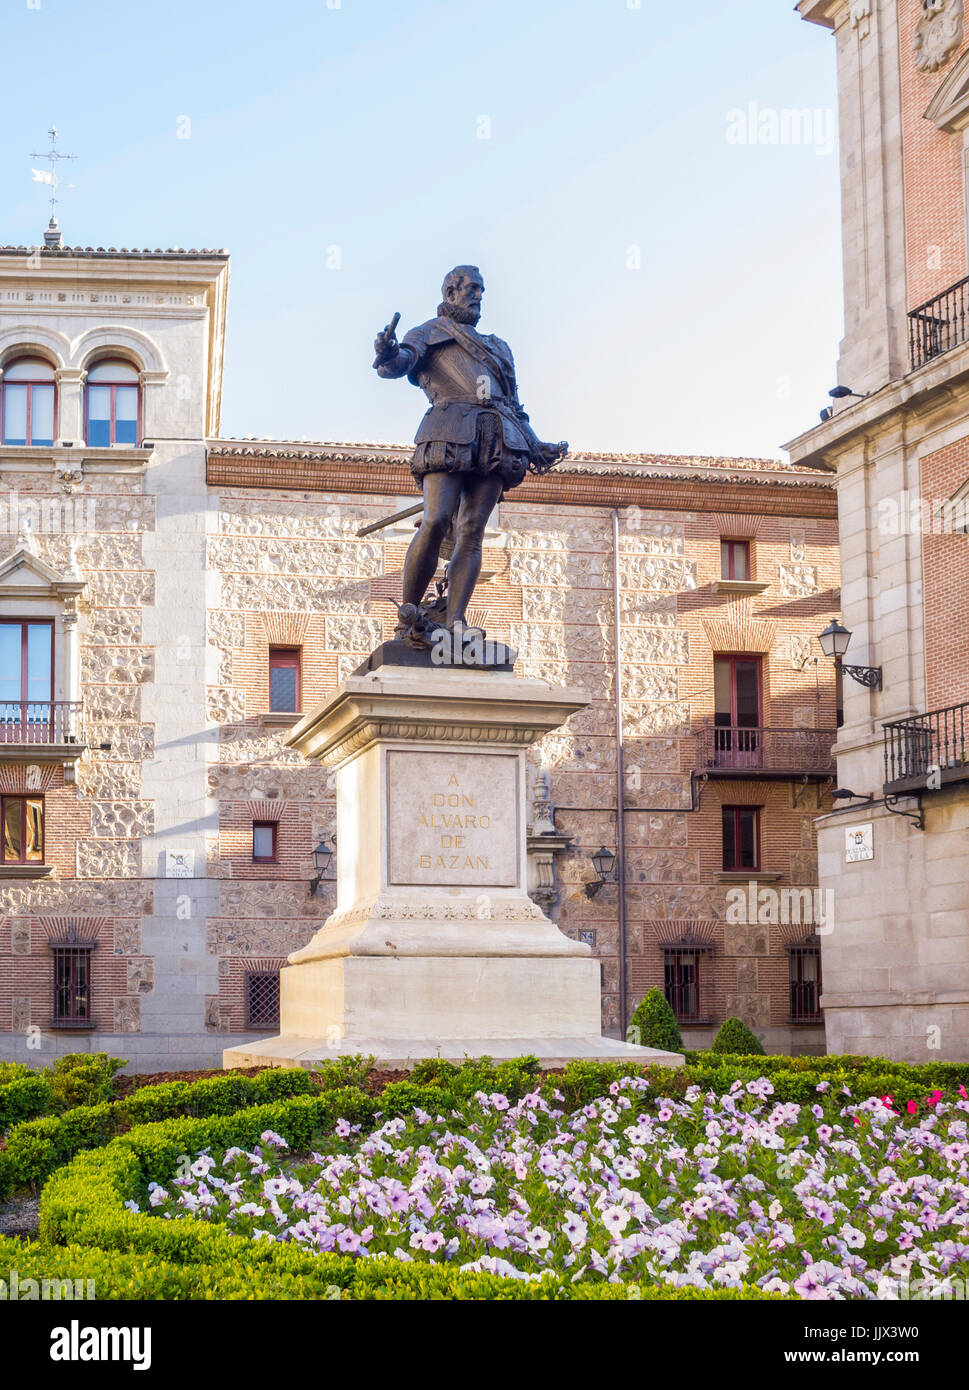 La statue de Don Álvaro de Bazán en la Plaza de la Villa. Madrid. España Banque D'Images